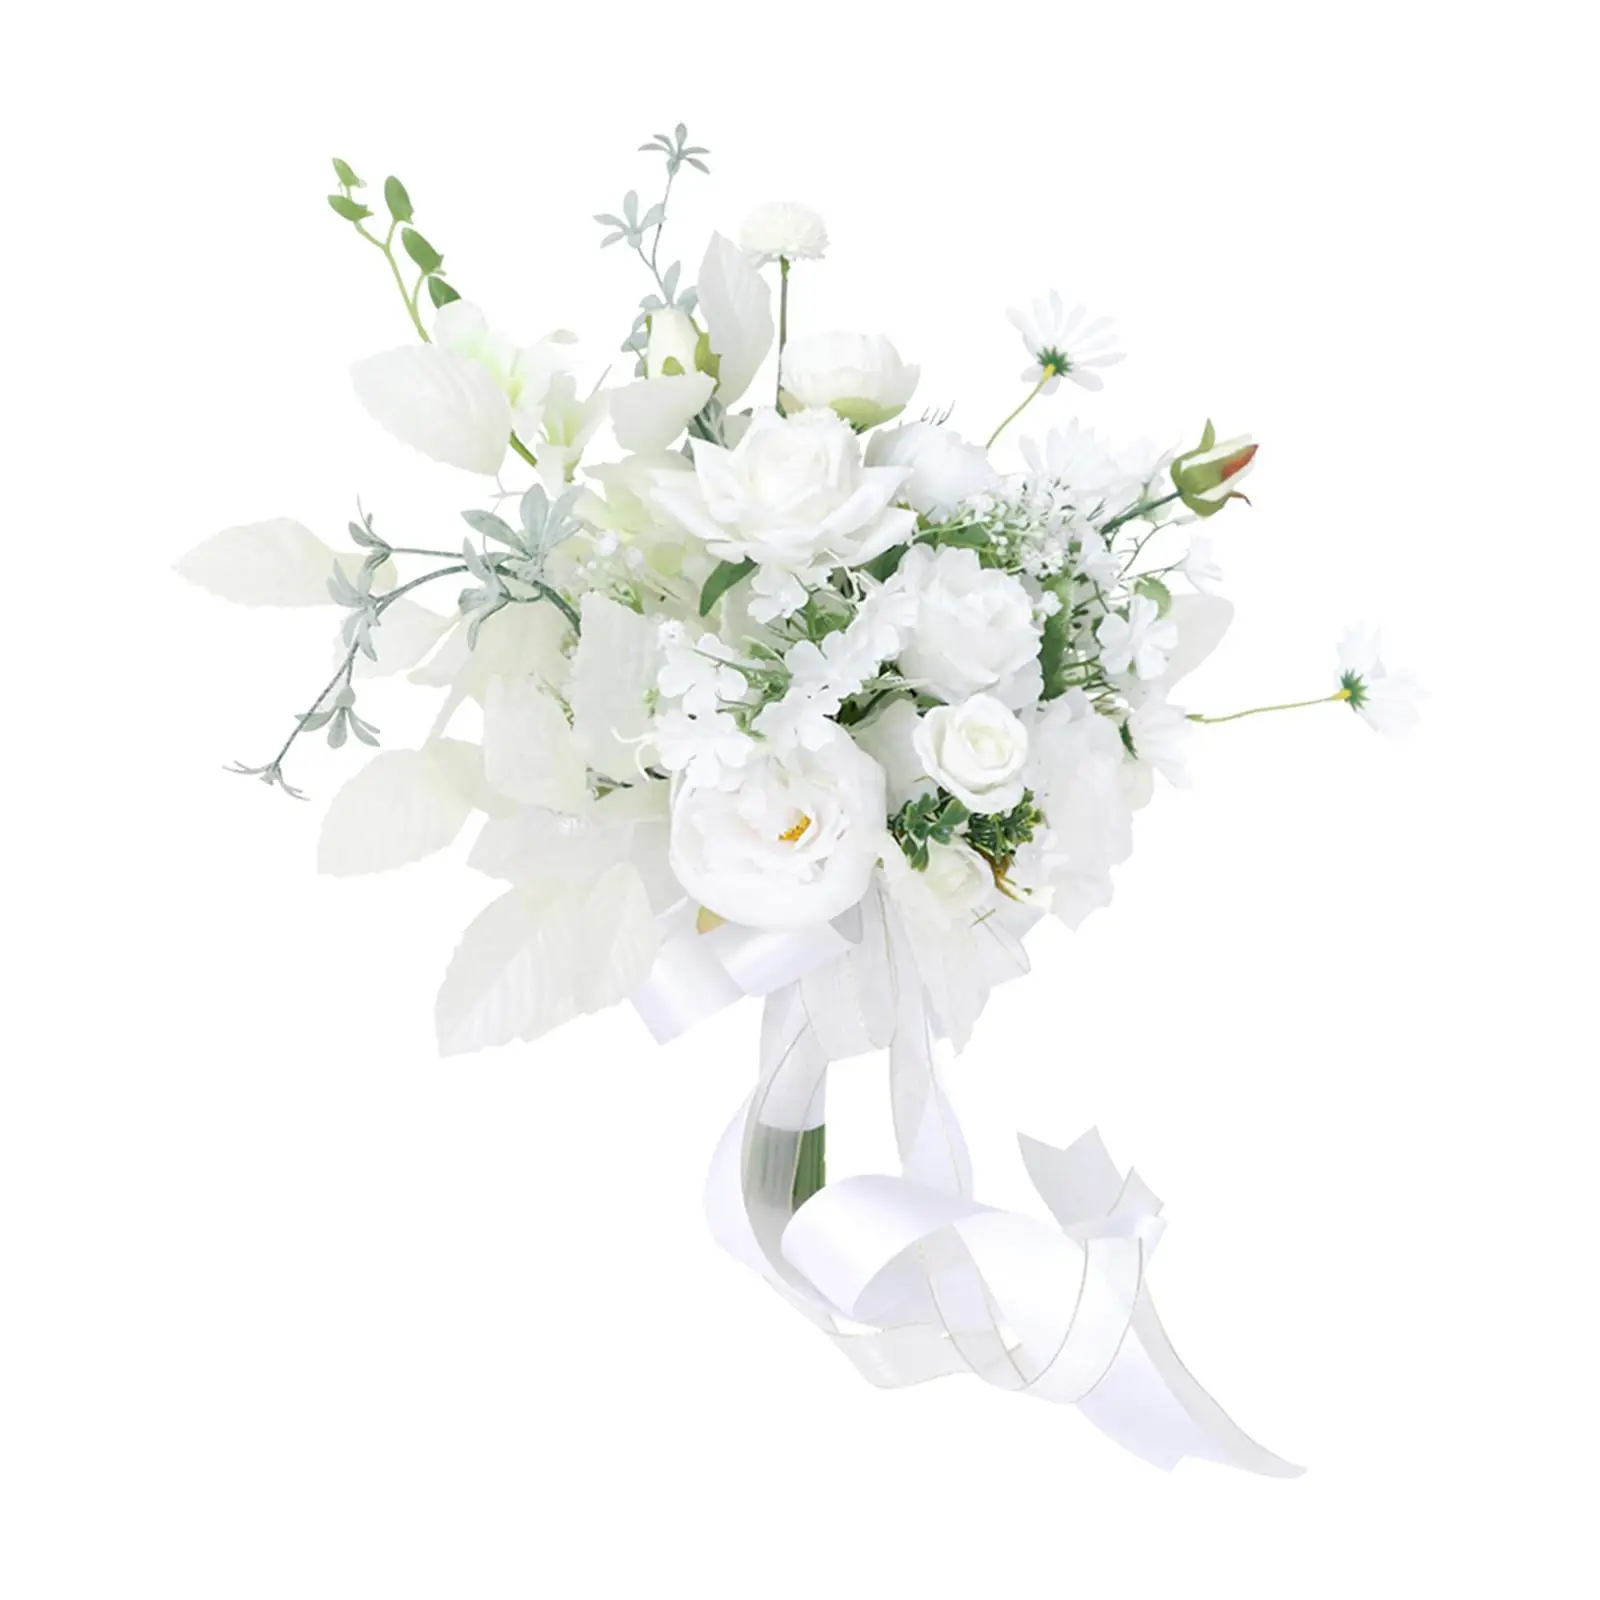 Romantic Bridal Bouquet Flower Arrangements Artificial Flowers Toss Bouquet for Party Anniversary Wedding Decor Supplies